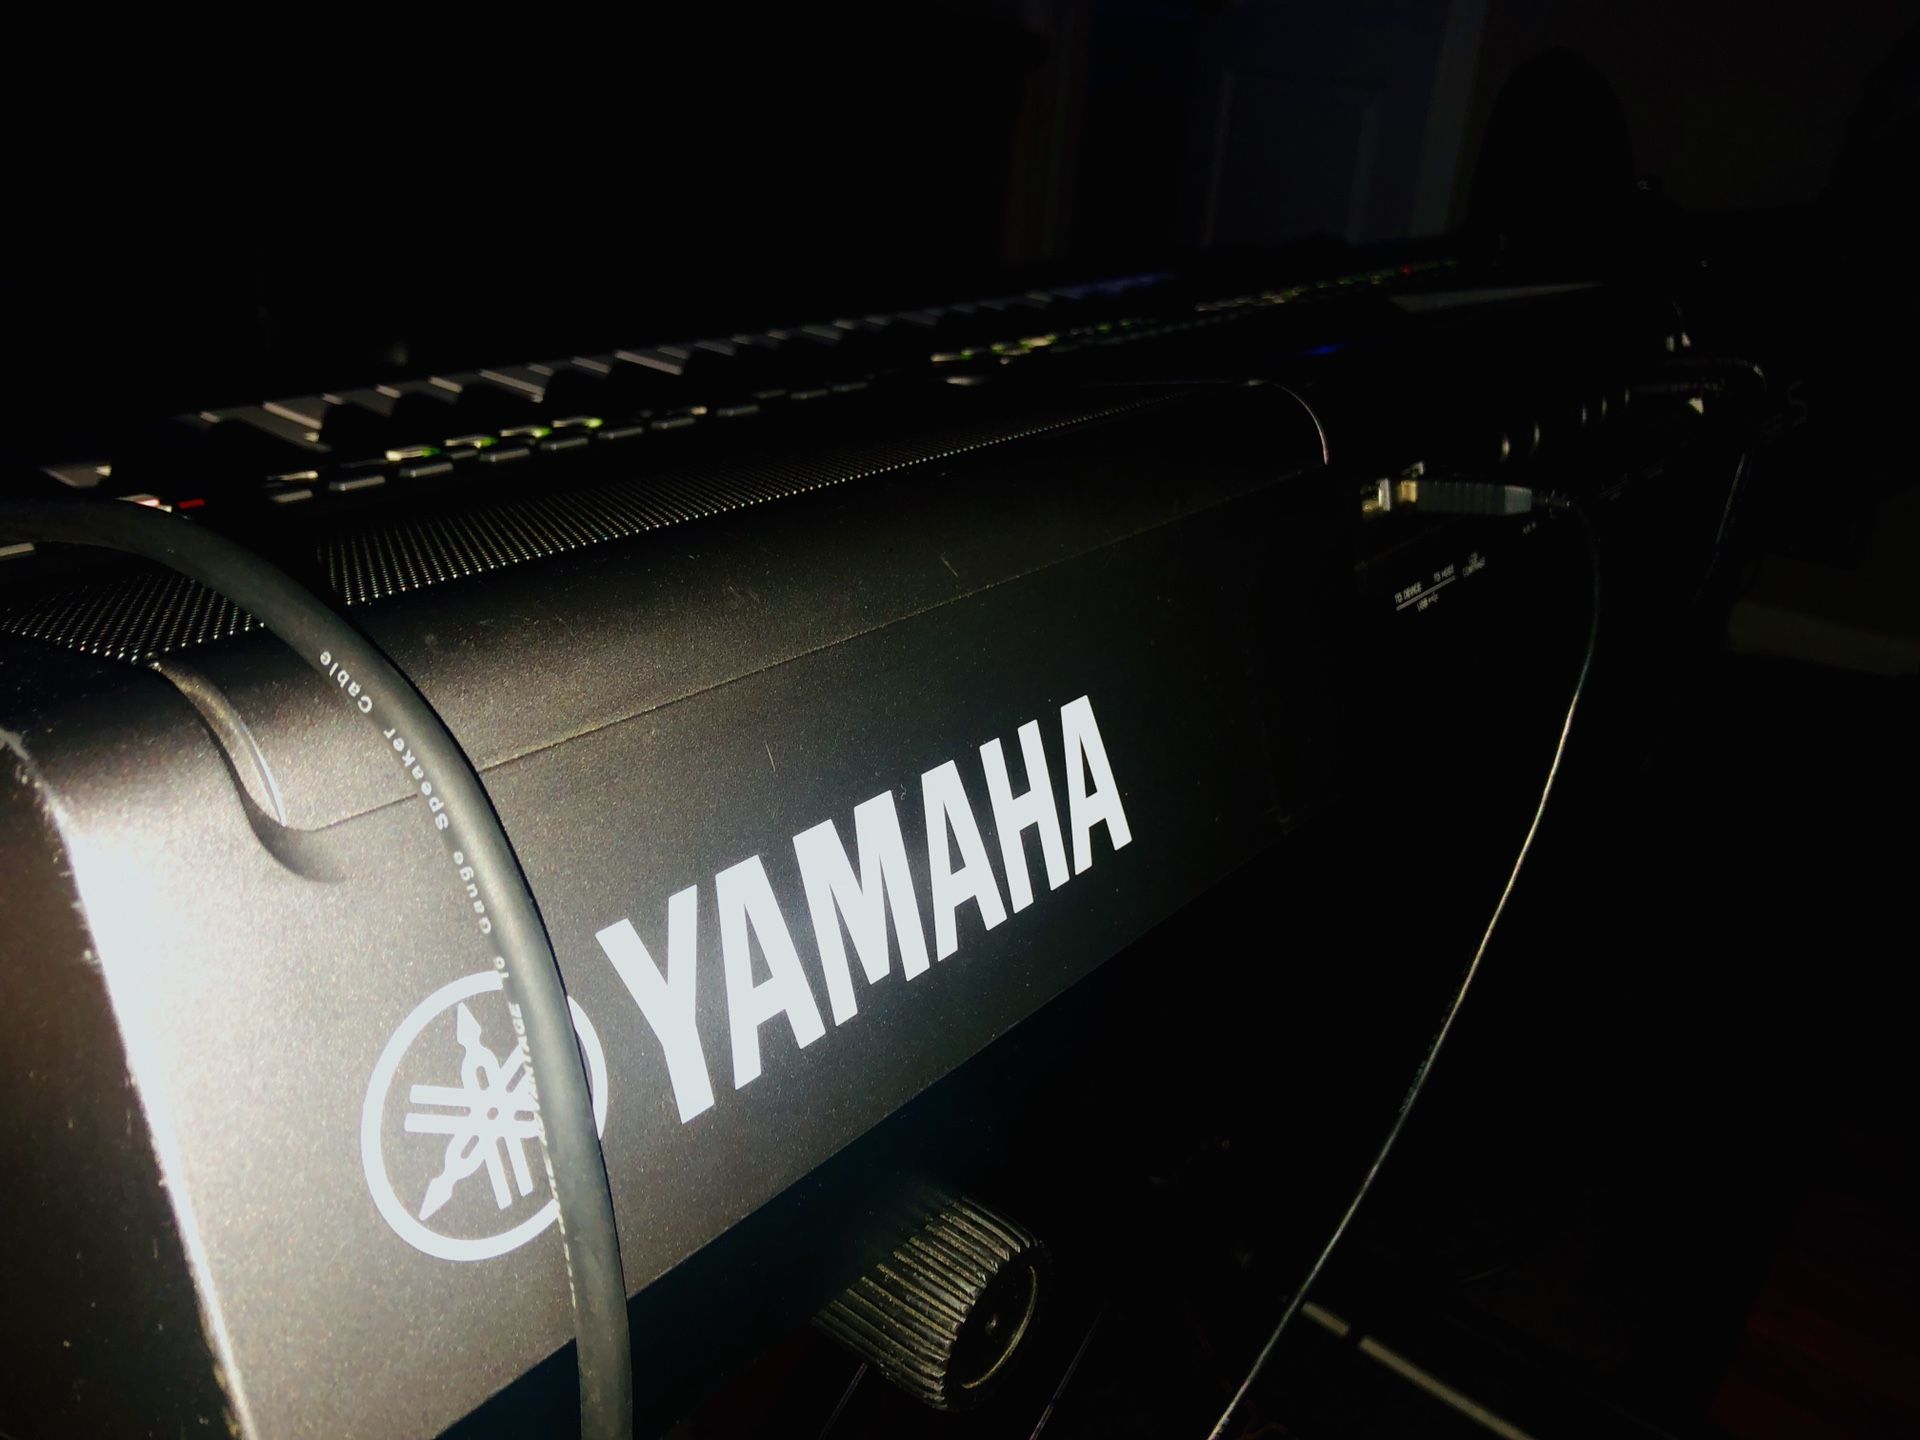 Yamaha PST s670 synthesizer